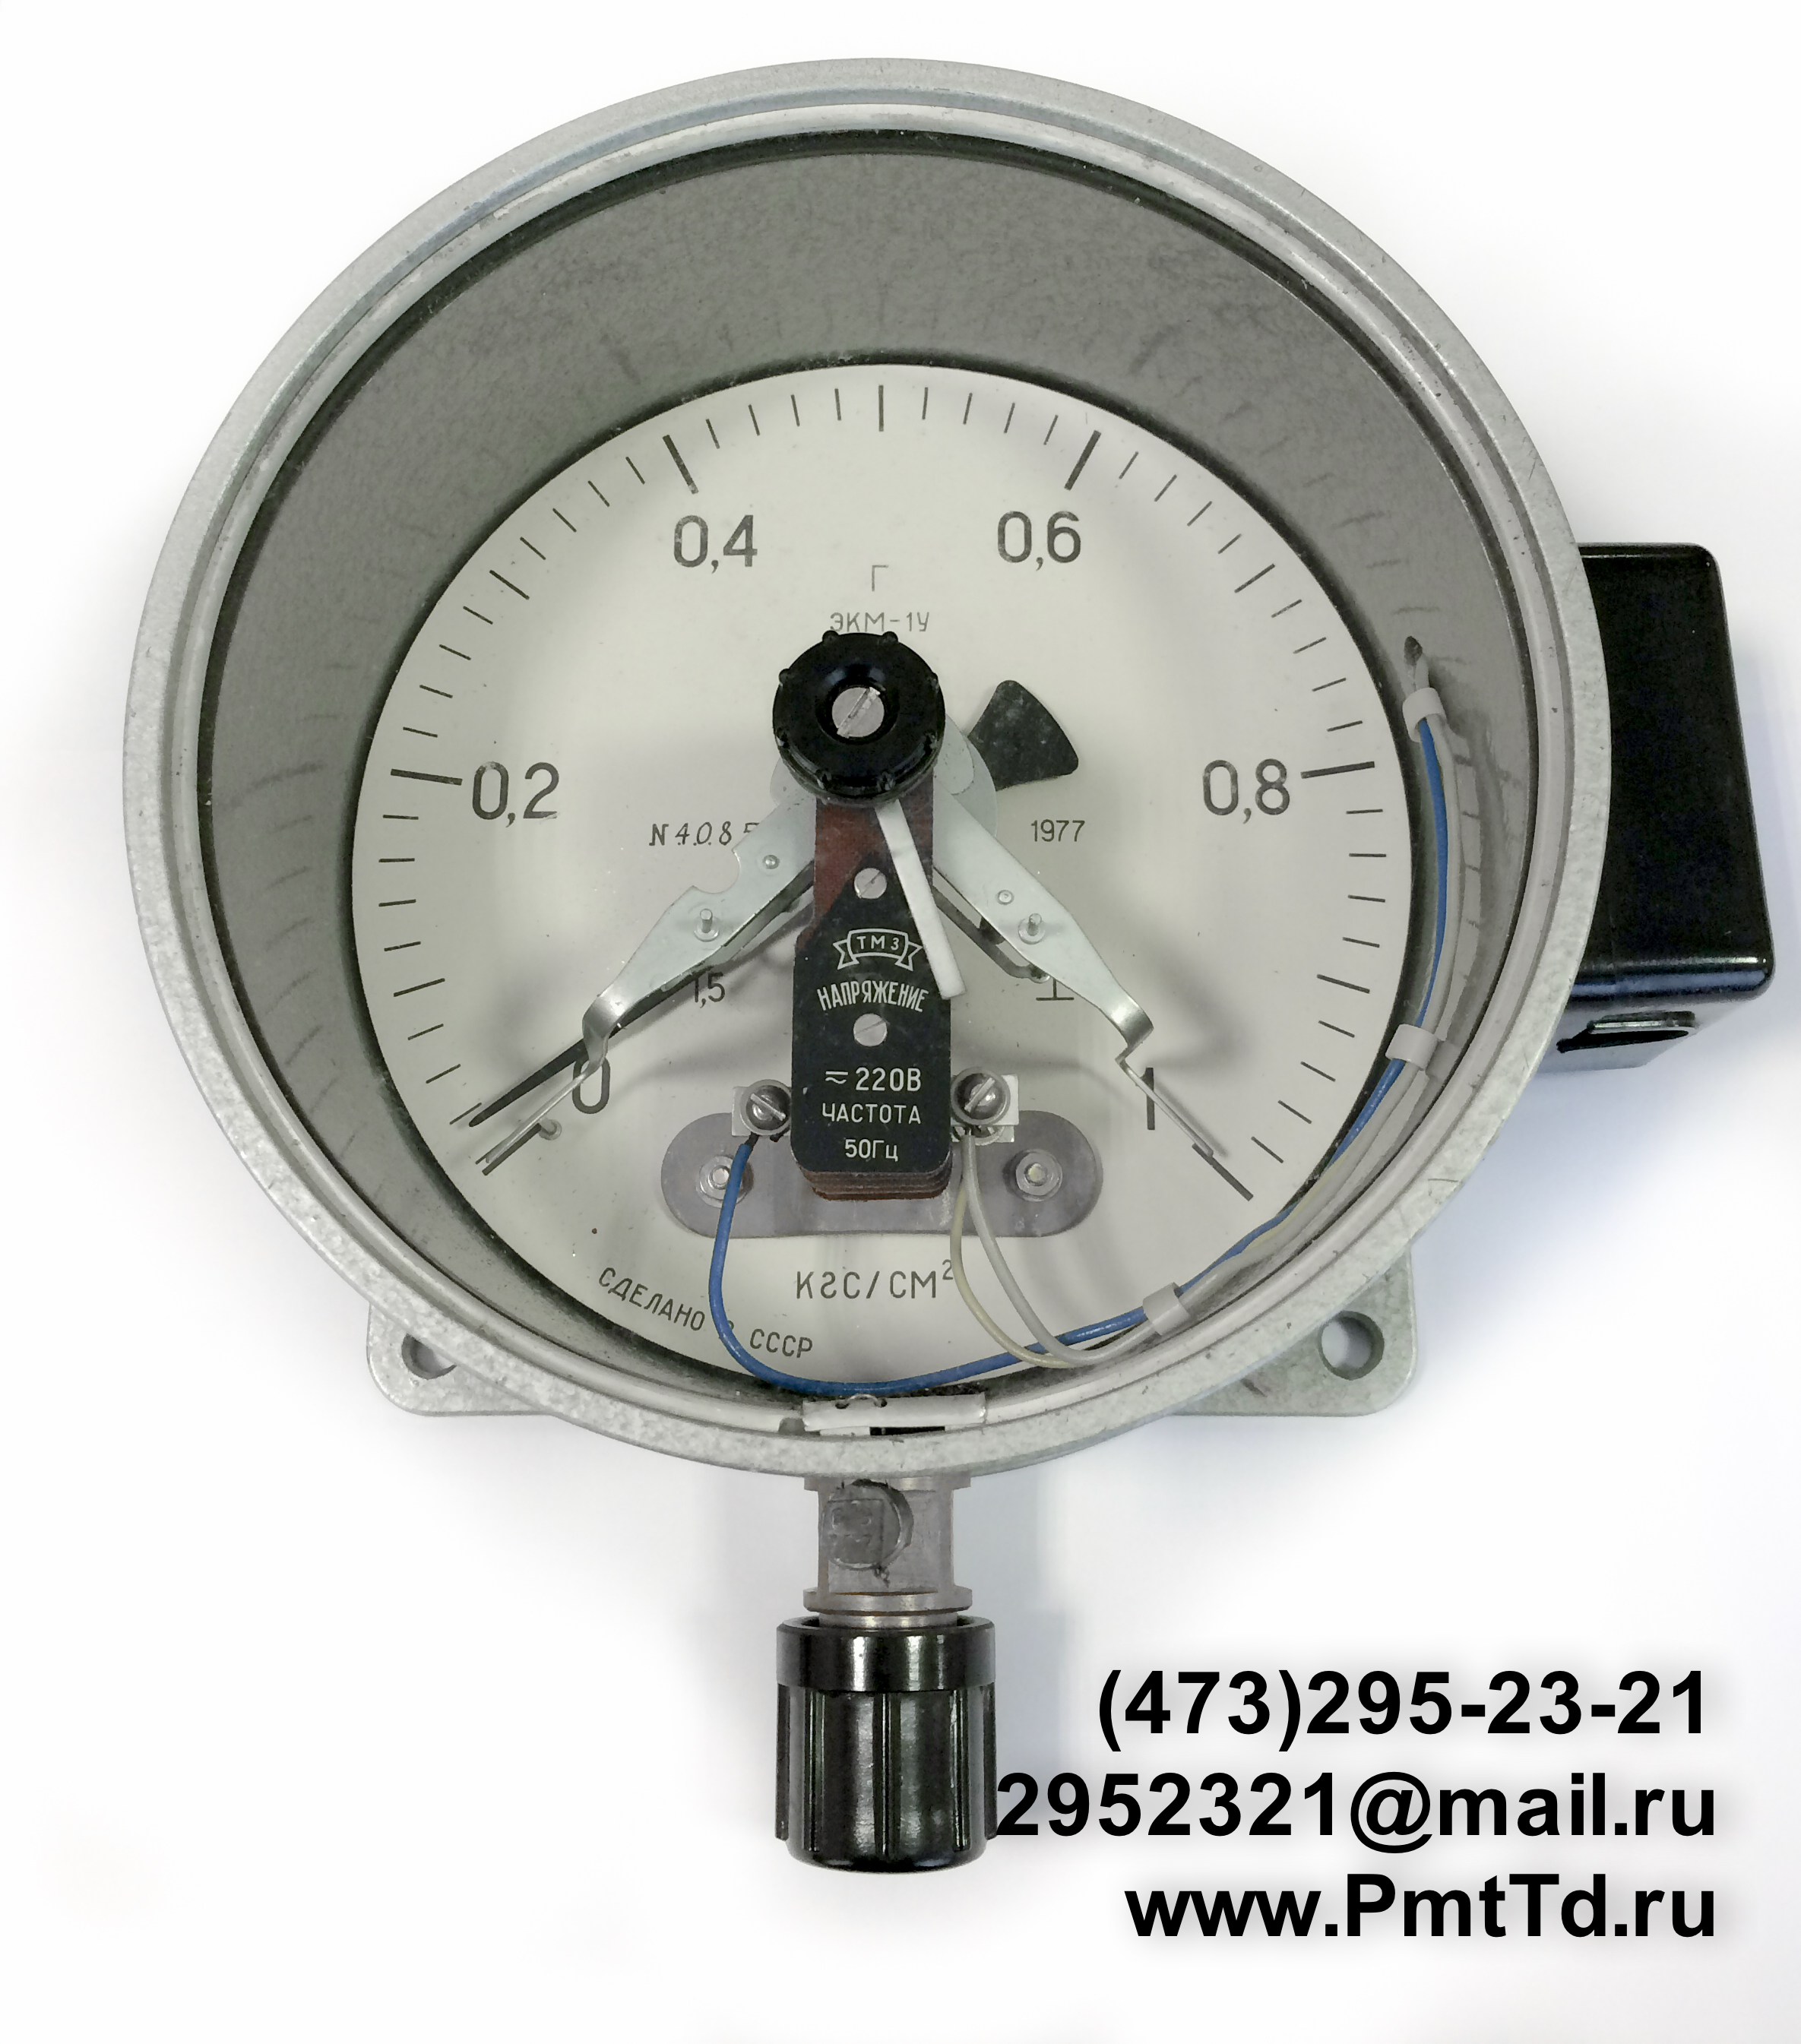 Электроконтактный манометр ЭКМ-1У 0-140 кгс/см2